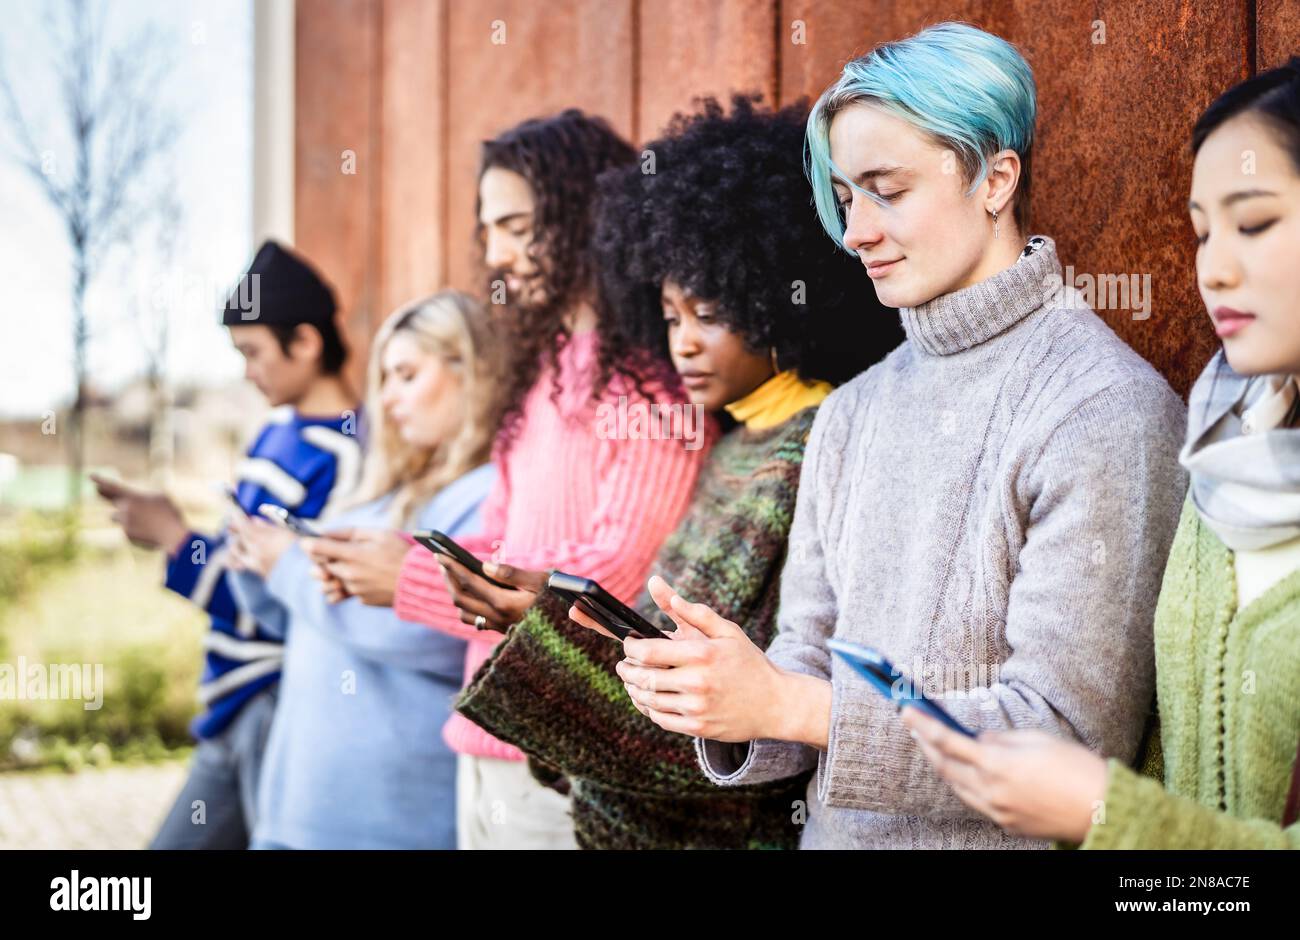 Verschiedene Personengruppen, die auf dem Campus der Universität ein Smartphone verwenden - Junge abhängige Freunde, die Inhalte auf einem Smartphone teilen - Tech Life Style CO Stockfoto